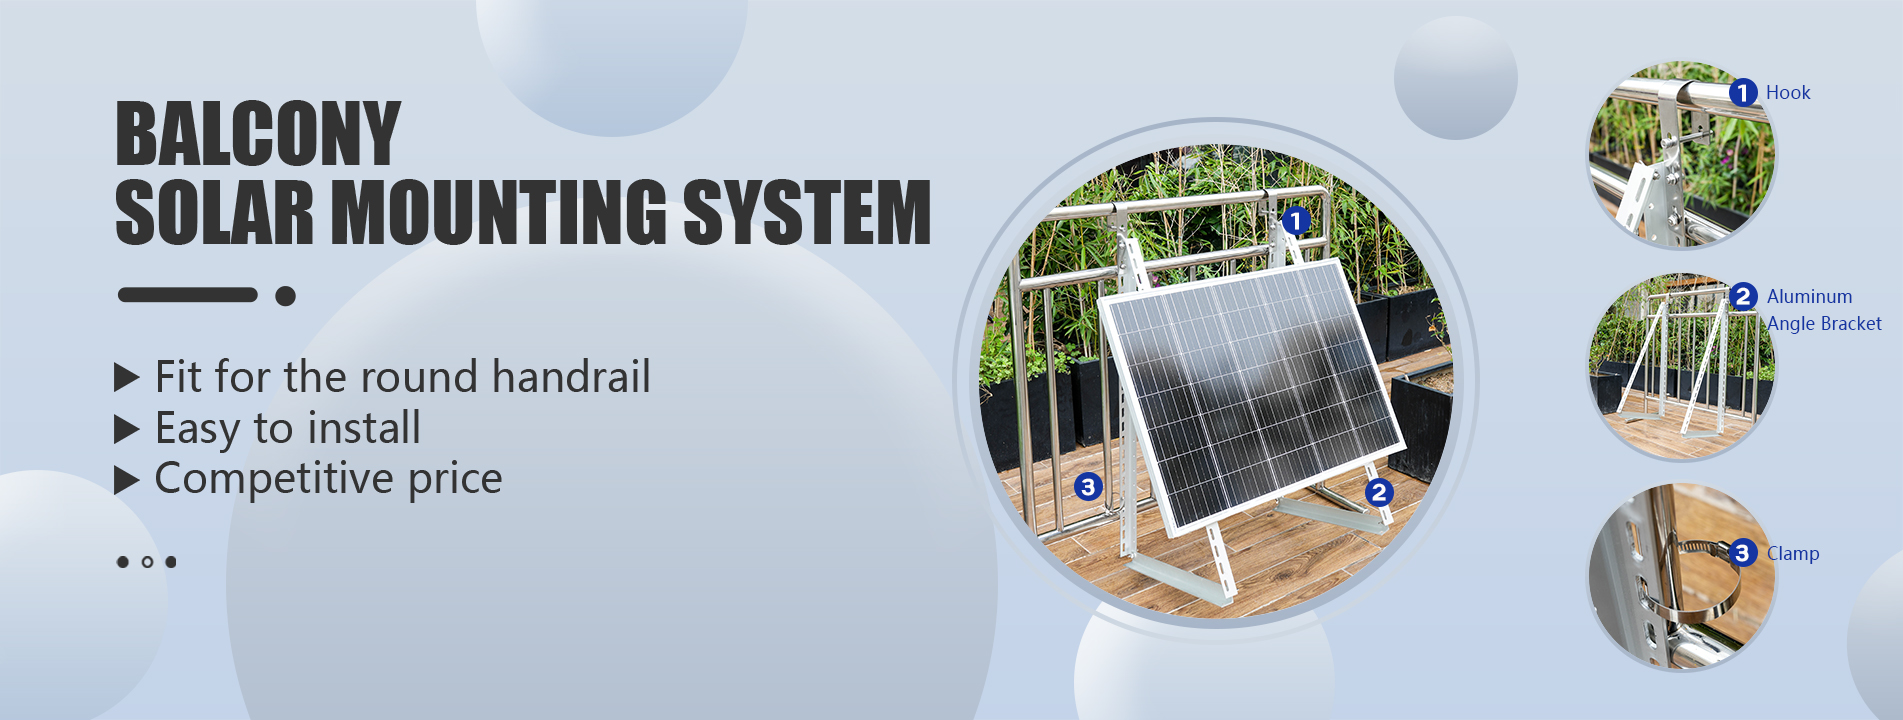 Sistema de montaje solar de balcón